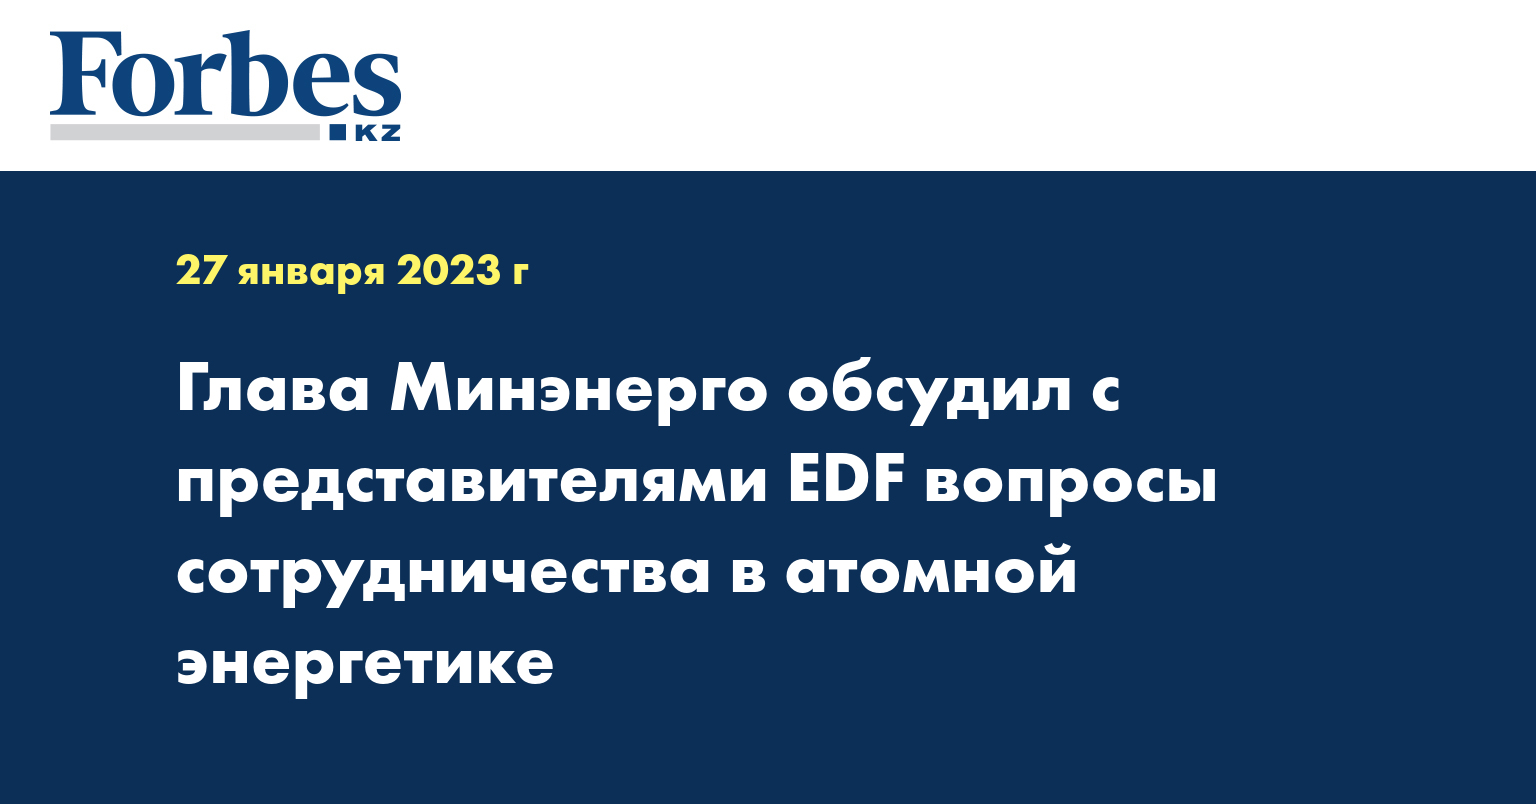 Глава Минэнерго обсудил с представителями EDF вопросы сотрудничества в атомной энергетике